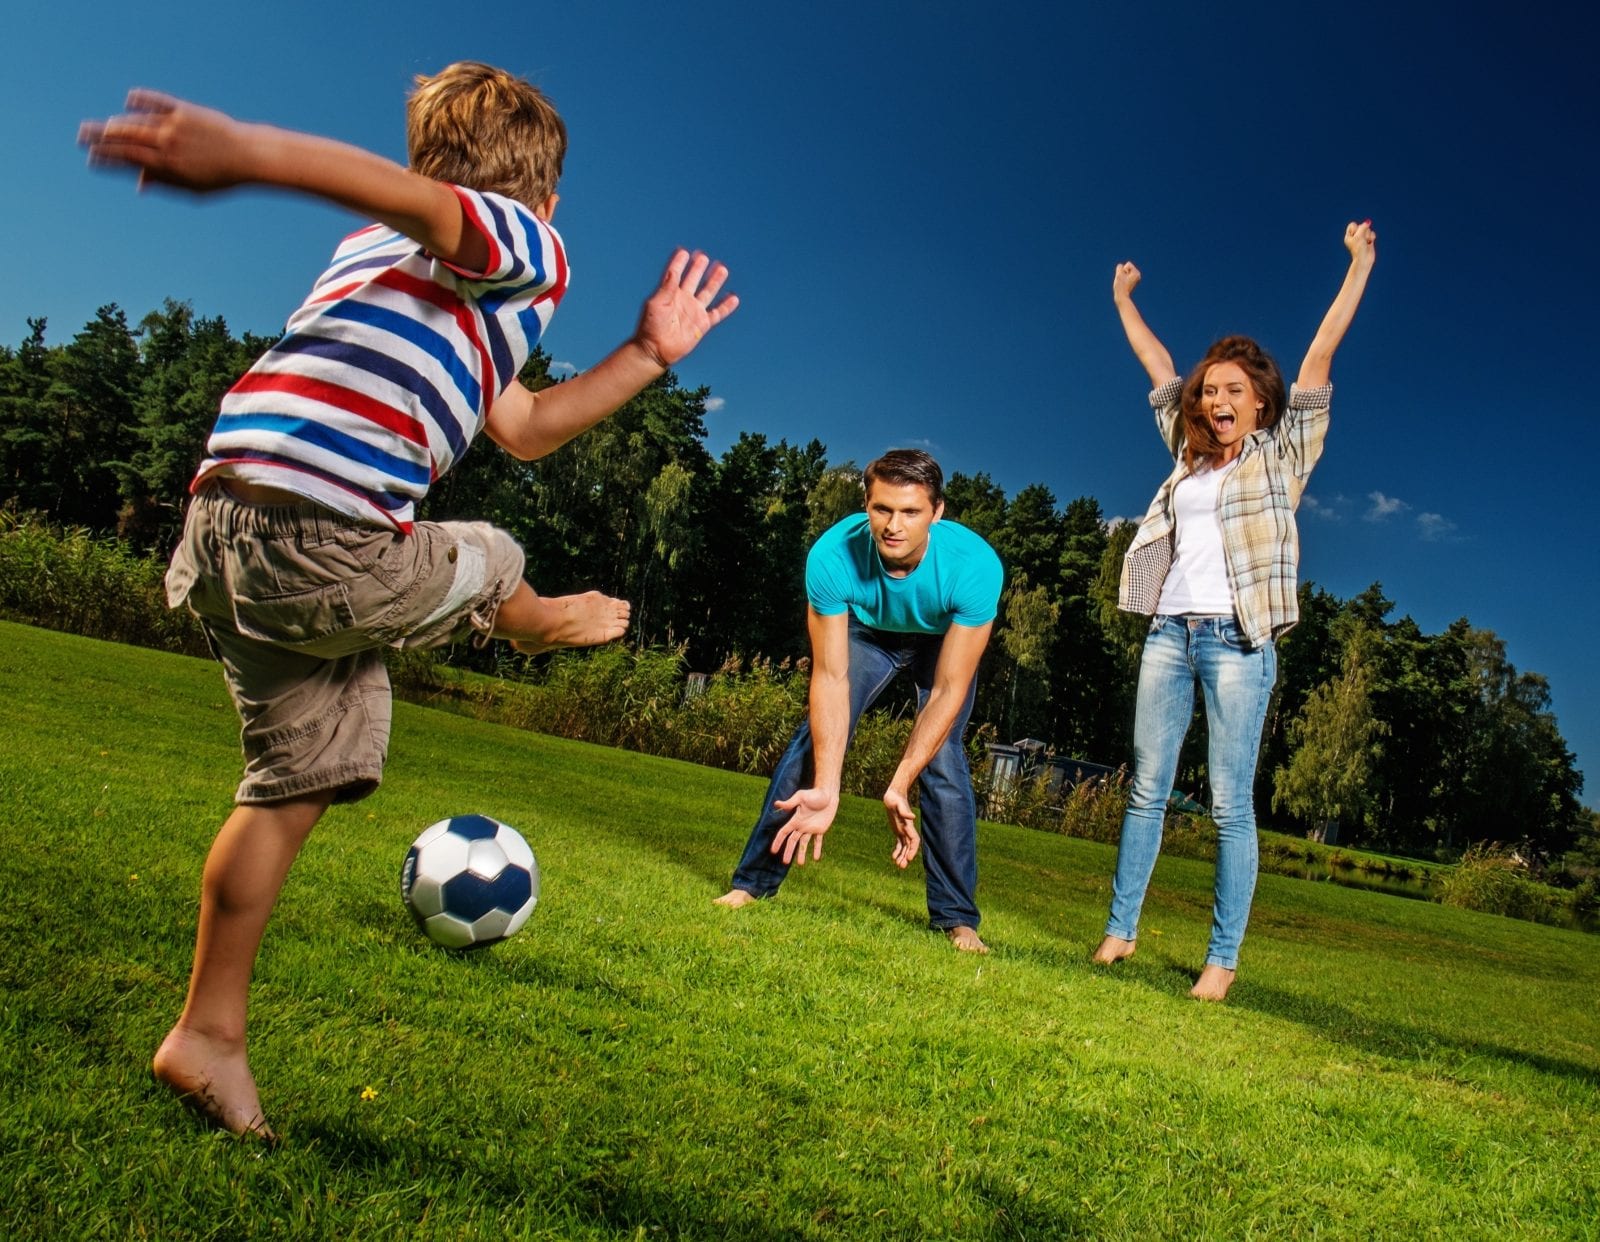 learning soccer skills for kids